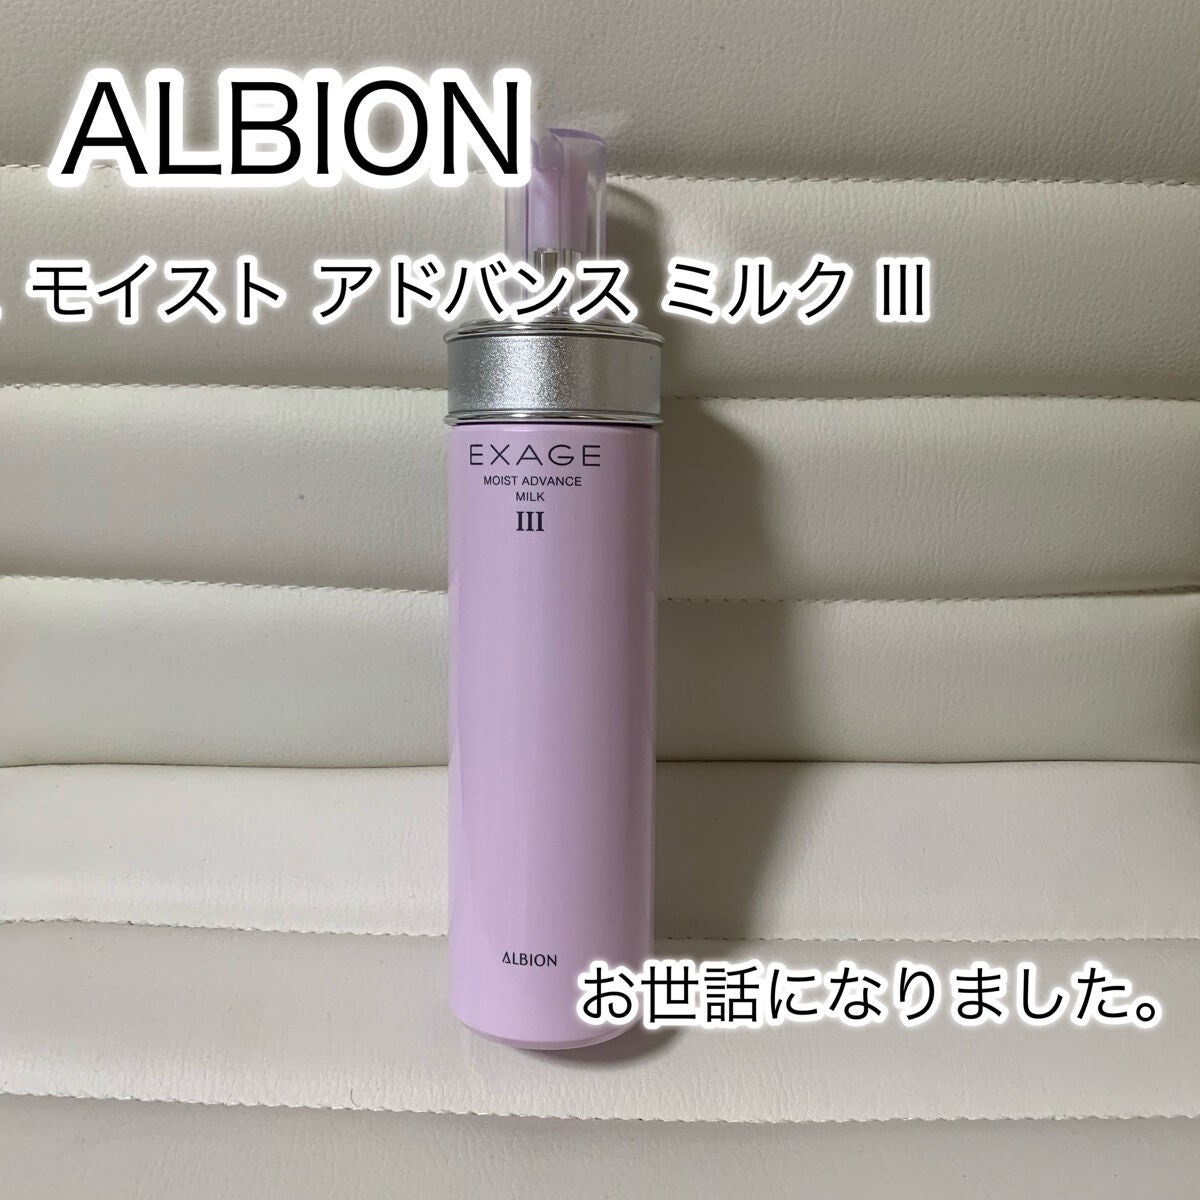 【新品】アルビオン エクサージュ モイストアドバンスミルク 乳液